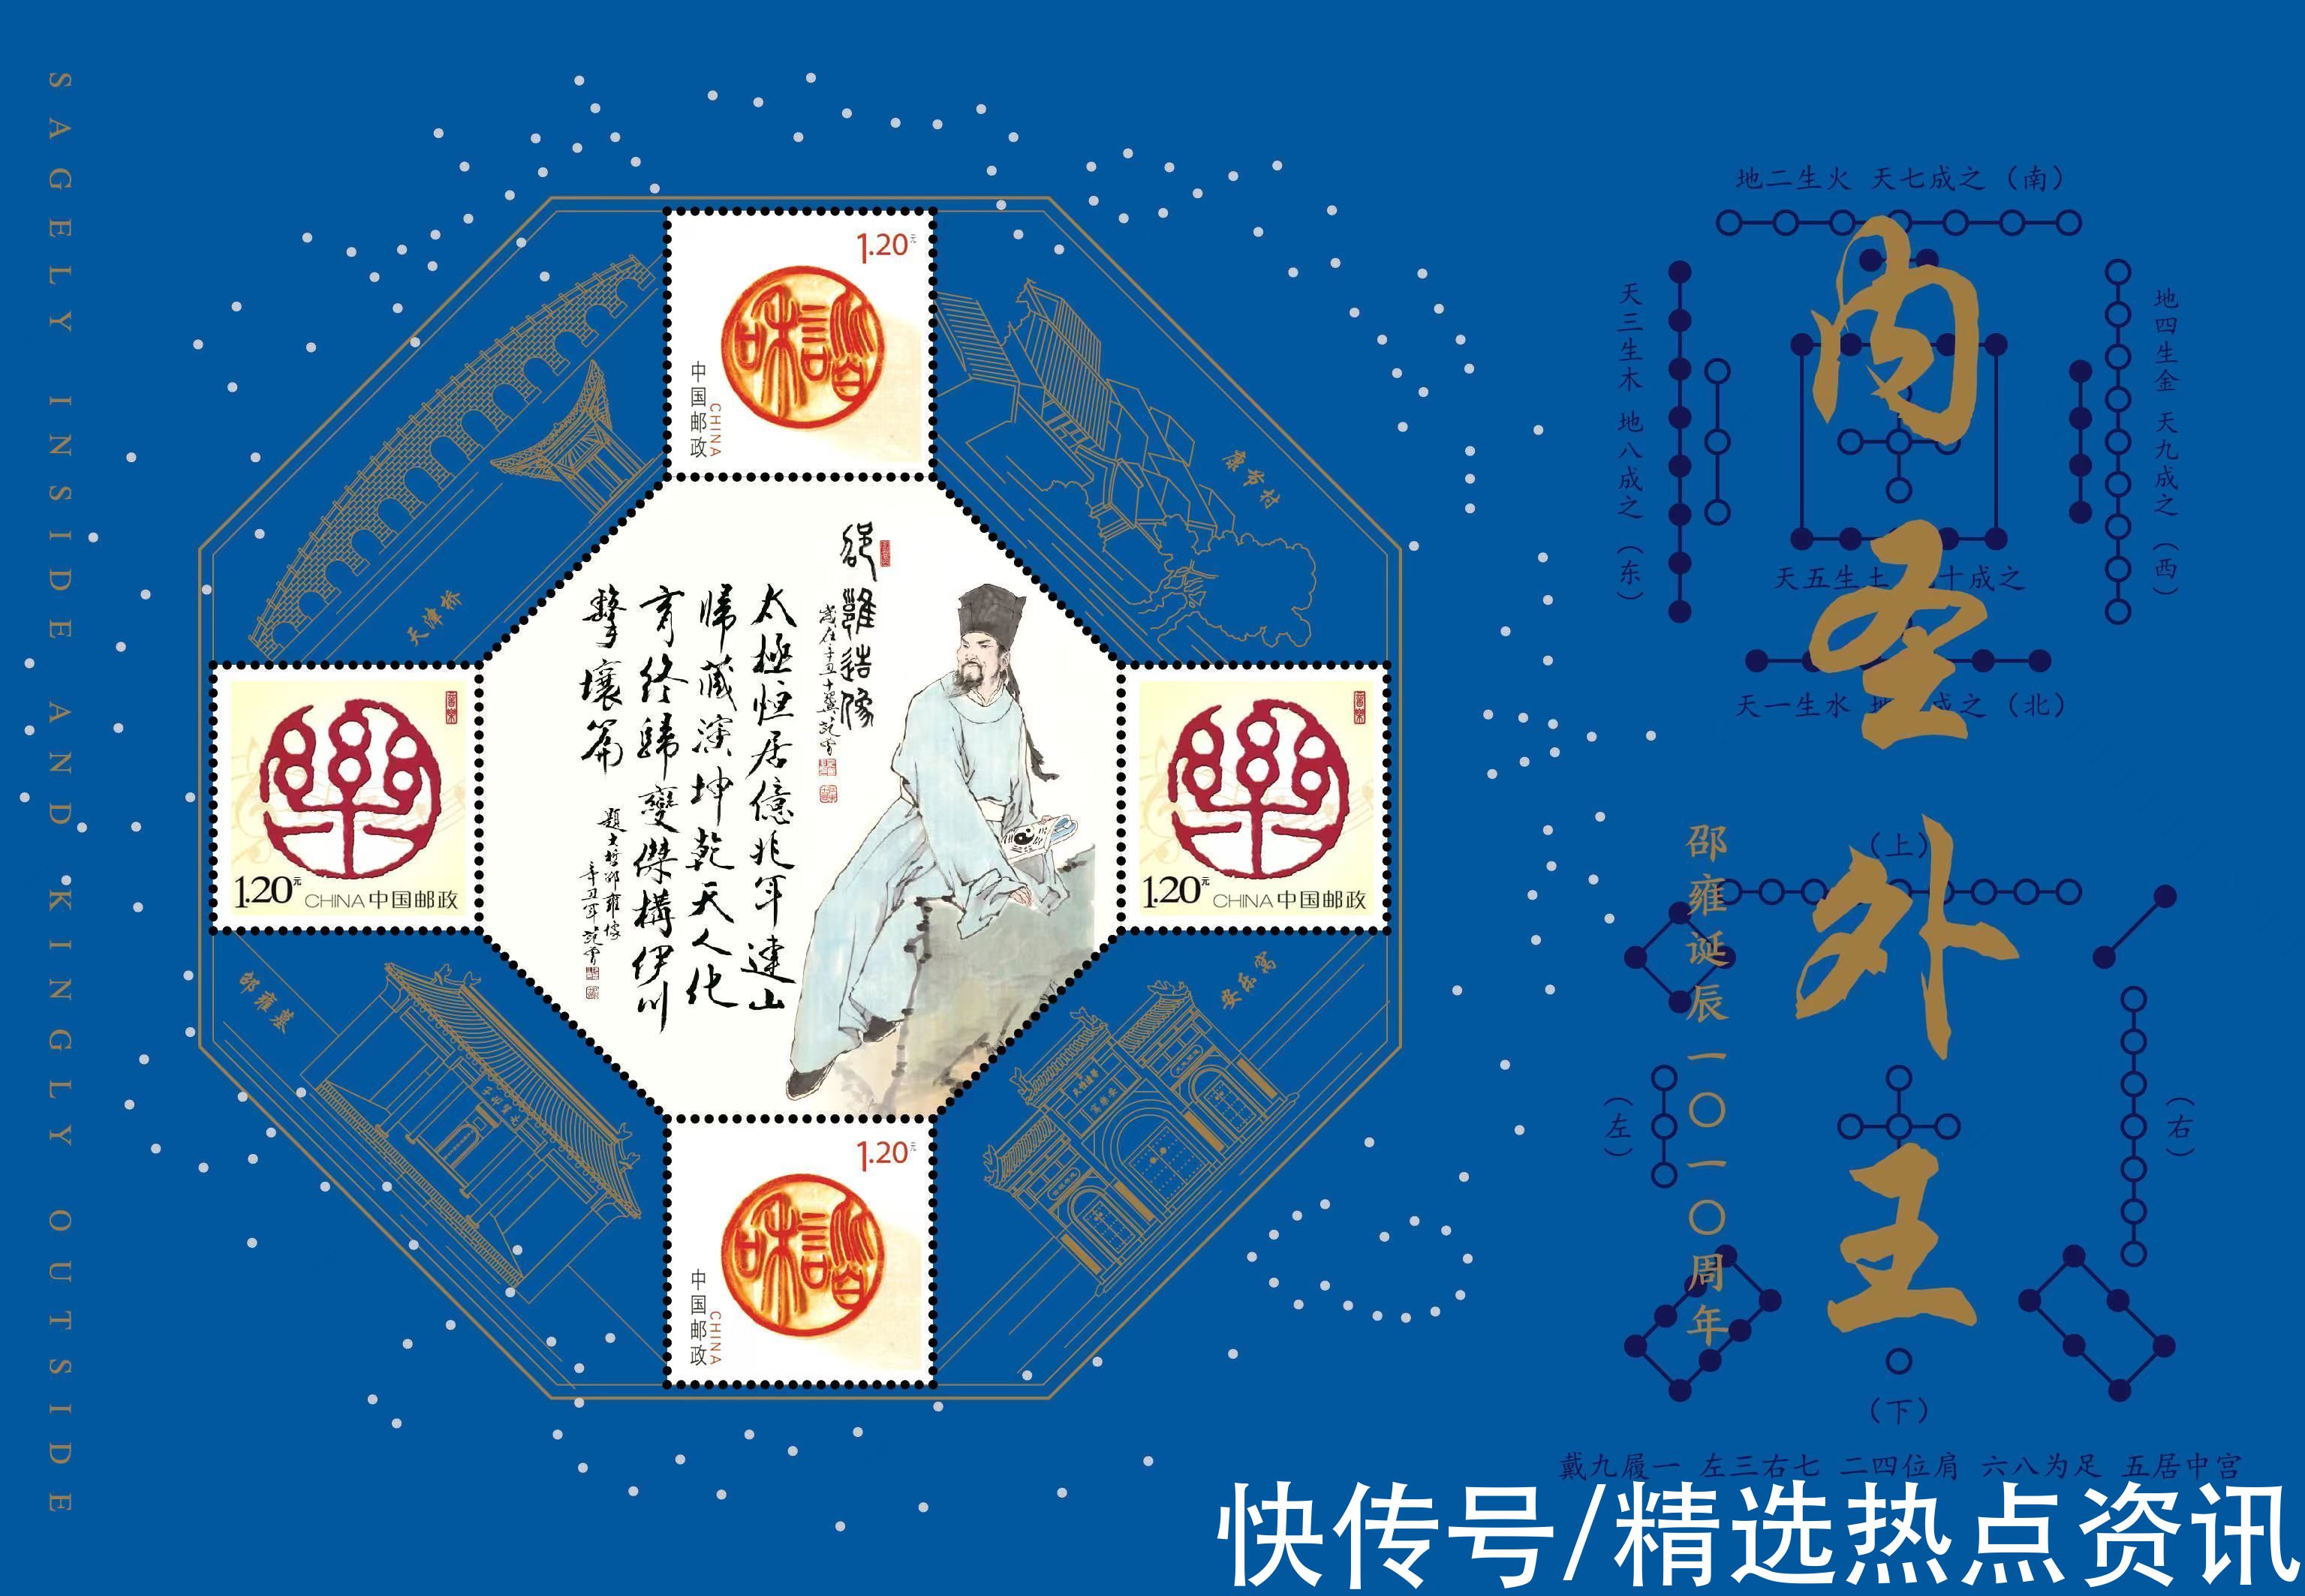 冬奥盛会|中国集邮虎年生肖贺岁精品暨“先贤系列”个性化邮票在京首发